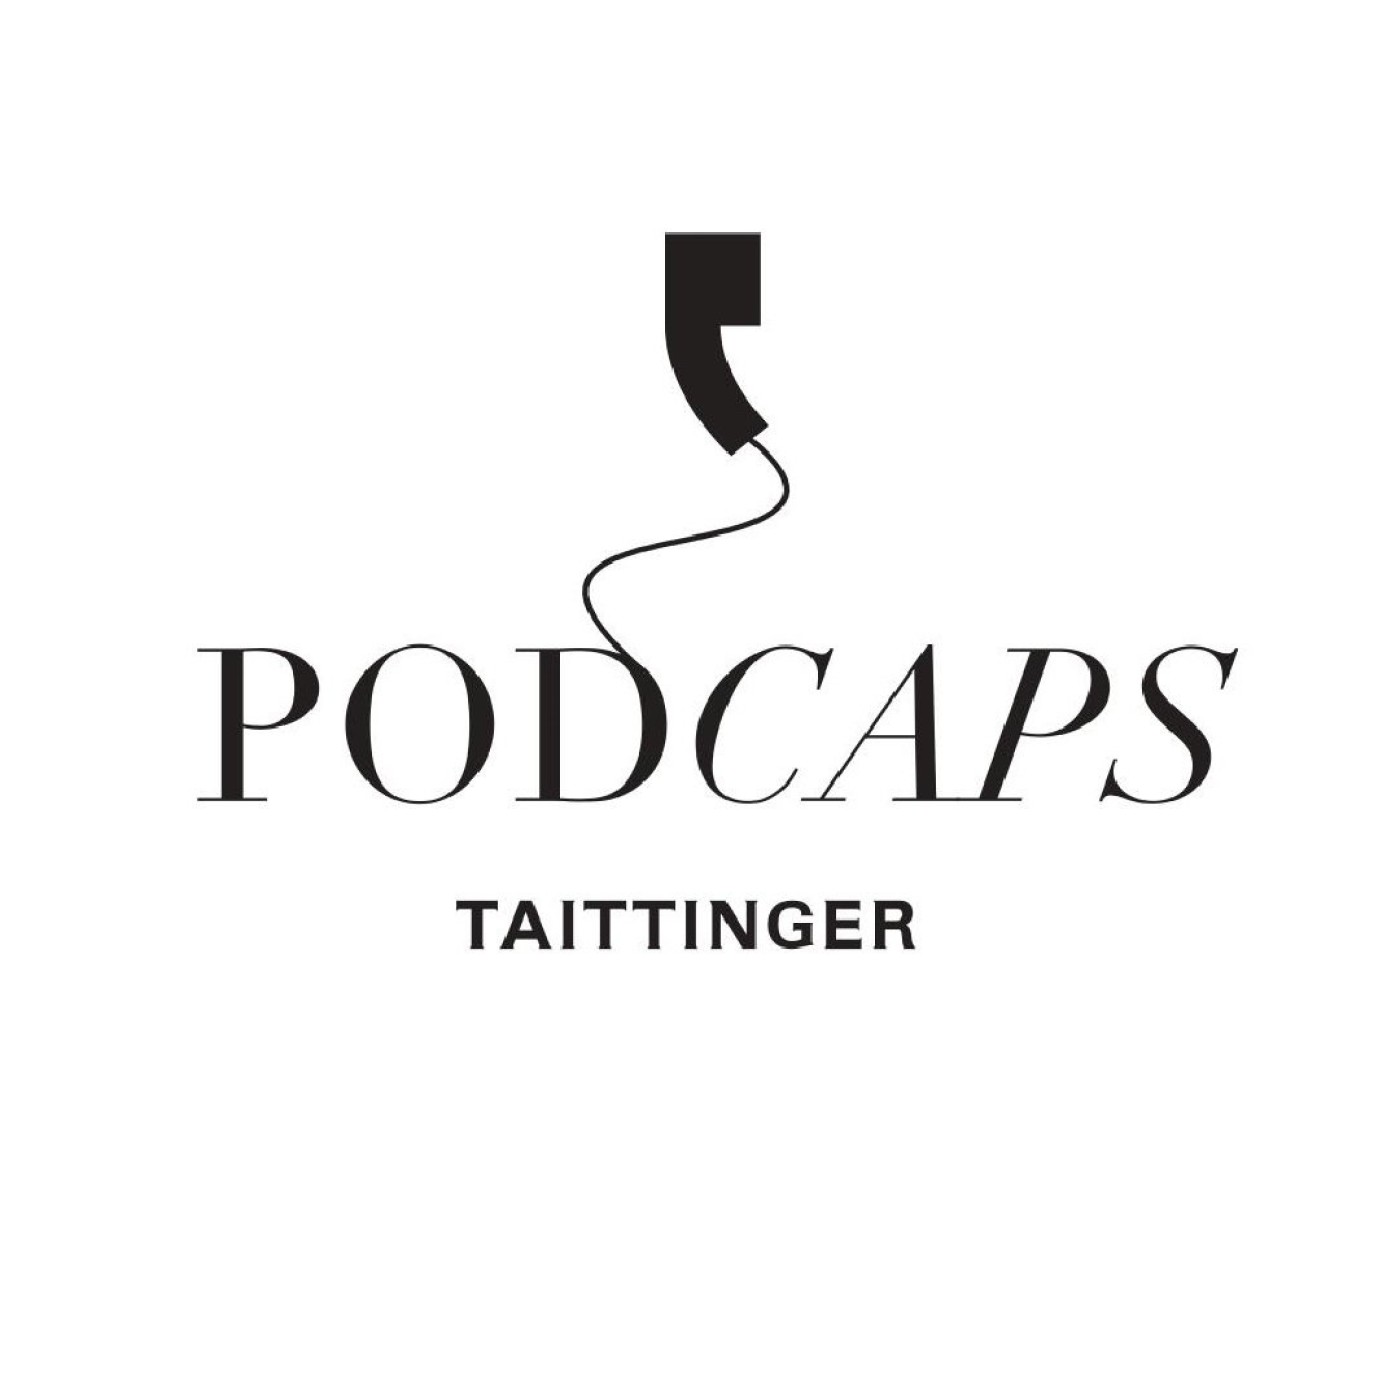 Podcaps Taittinger : Alexandre Ponnavoy, cellar Master at Taittinger